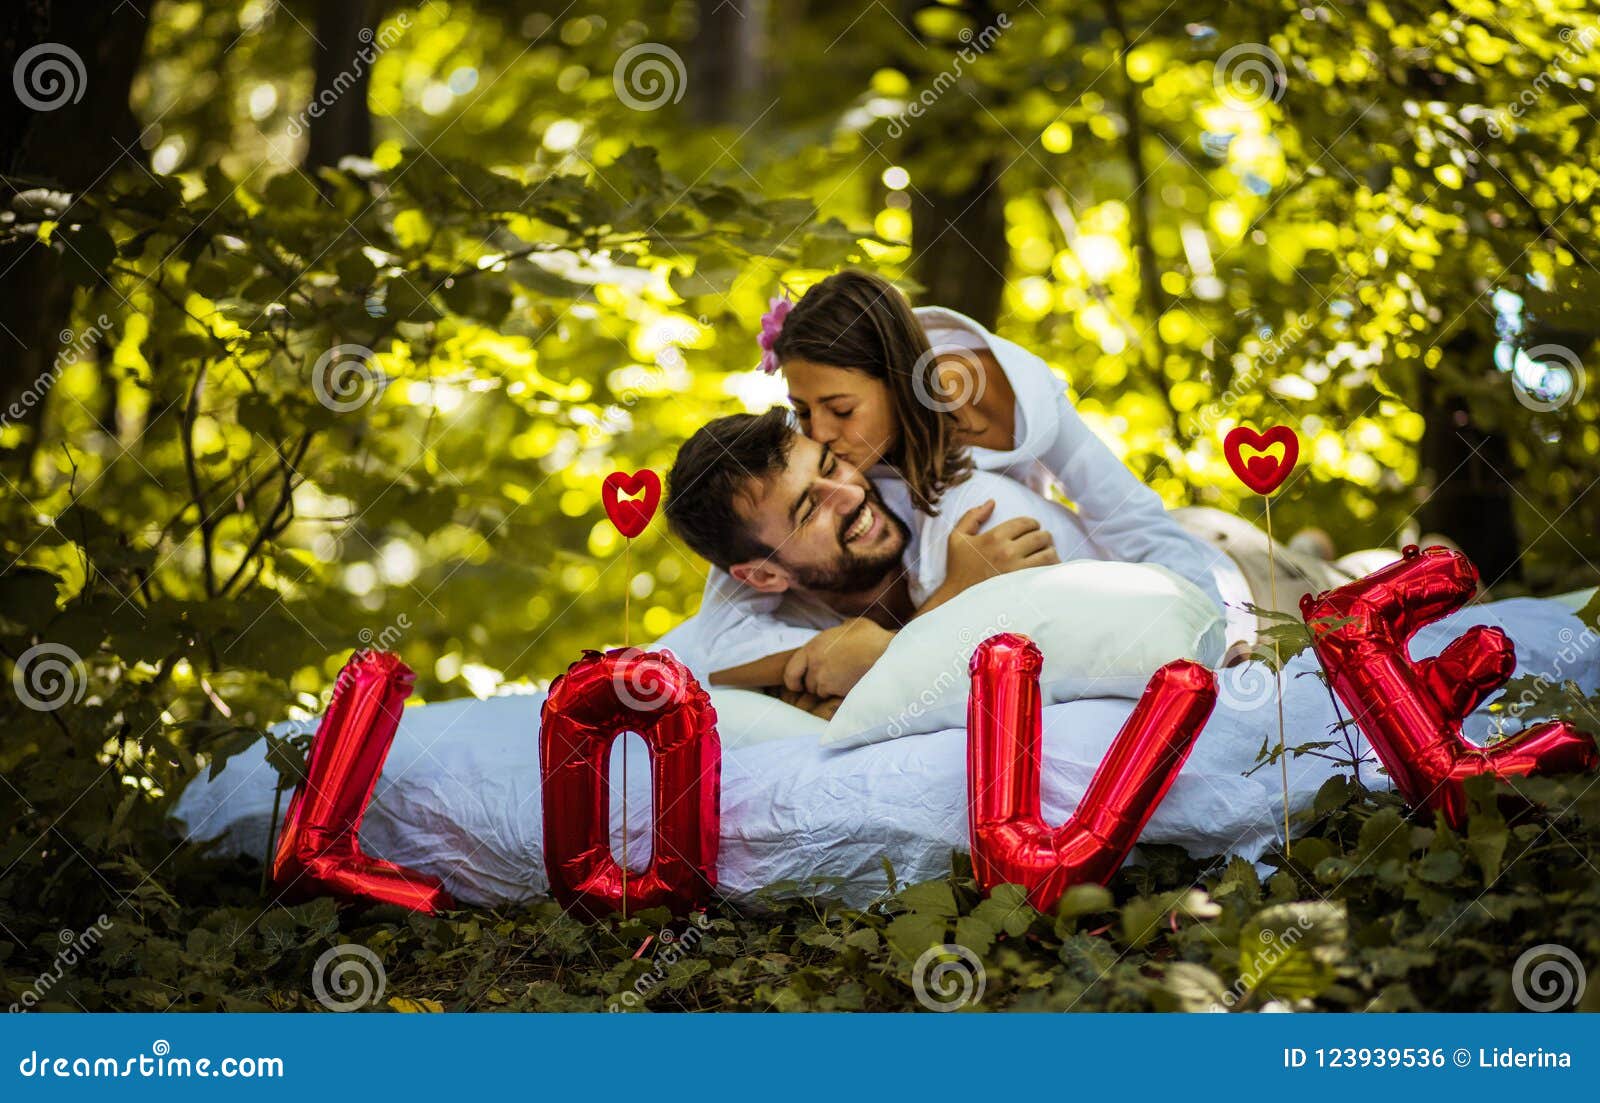 My Boyfriend is Best in World. Stock Photo - Image of love, male ...